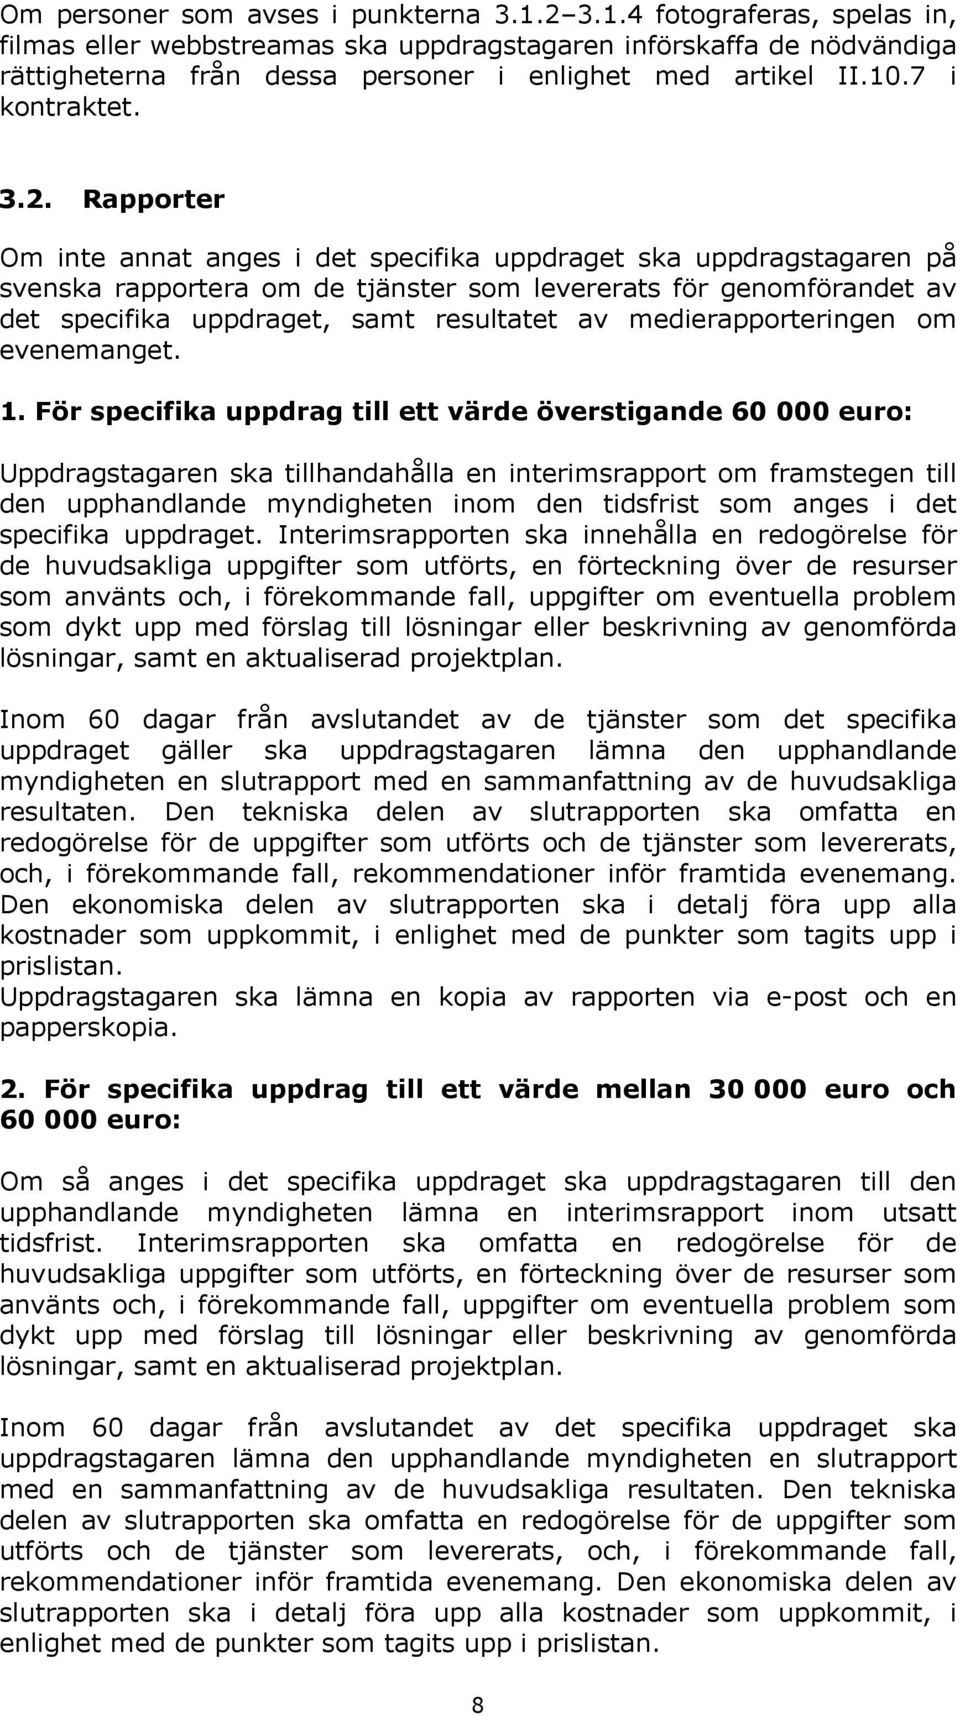 Rapporter Om inte annat anges i det specifika uppdraget ska uppdragstagaren på svenska rapportera om de tjänster som levererats för genomförandet av det specifika uppdraget, samt resultatet av